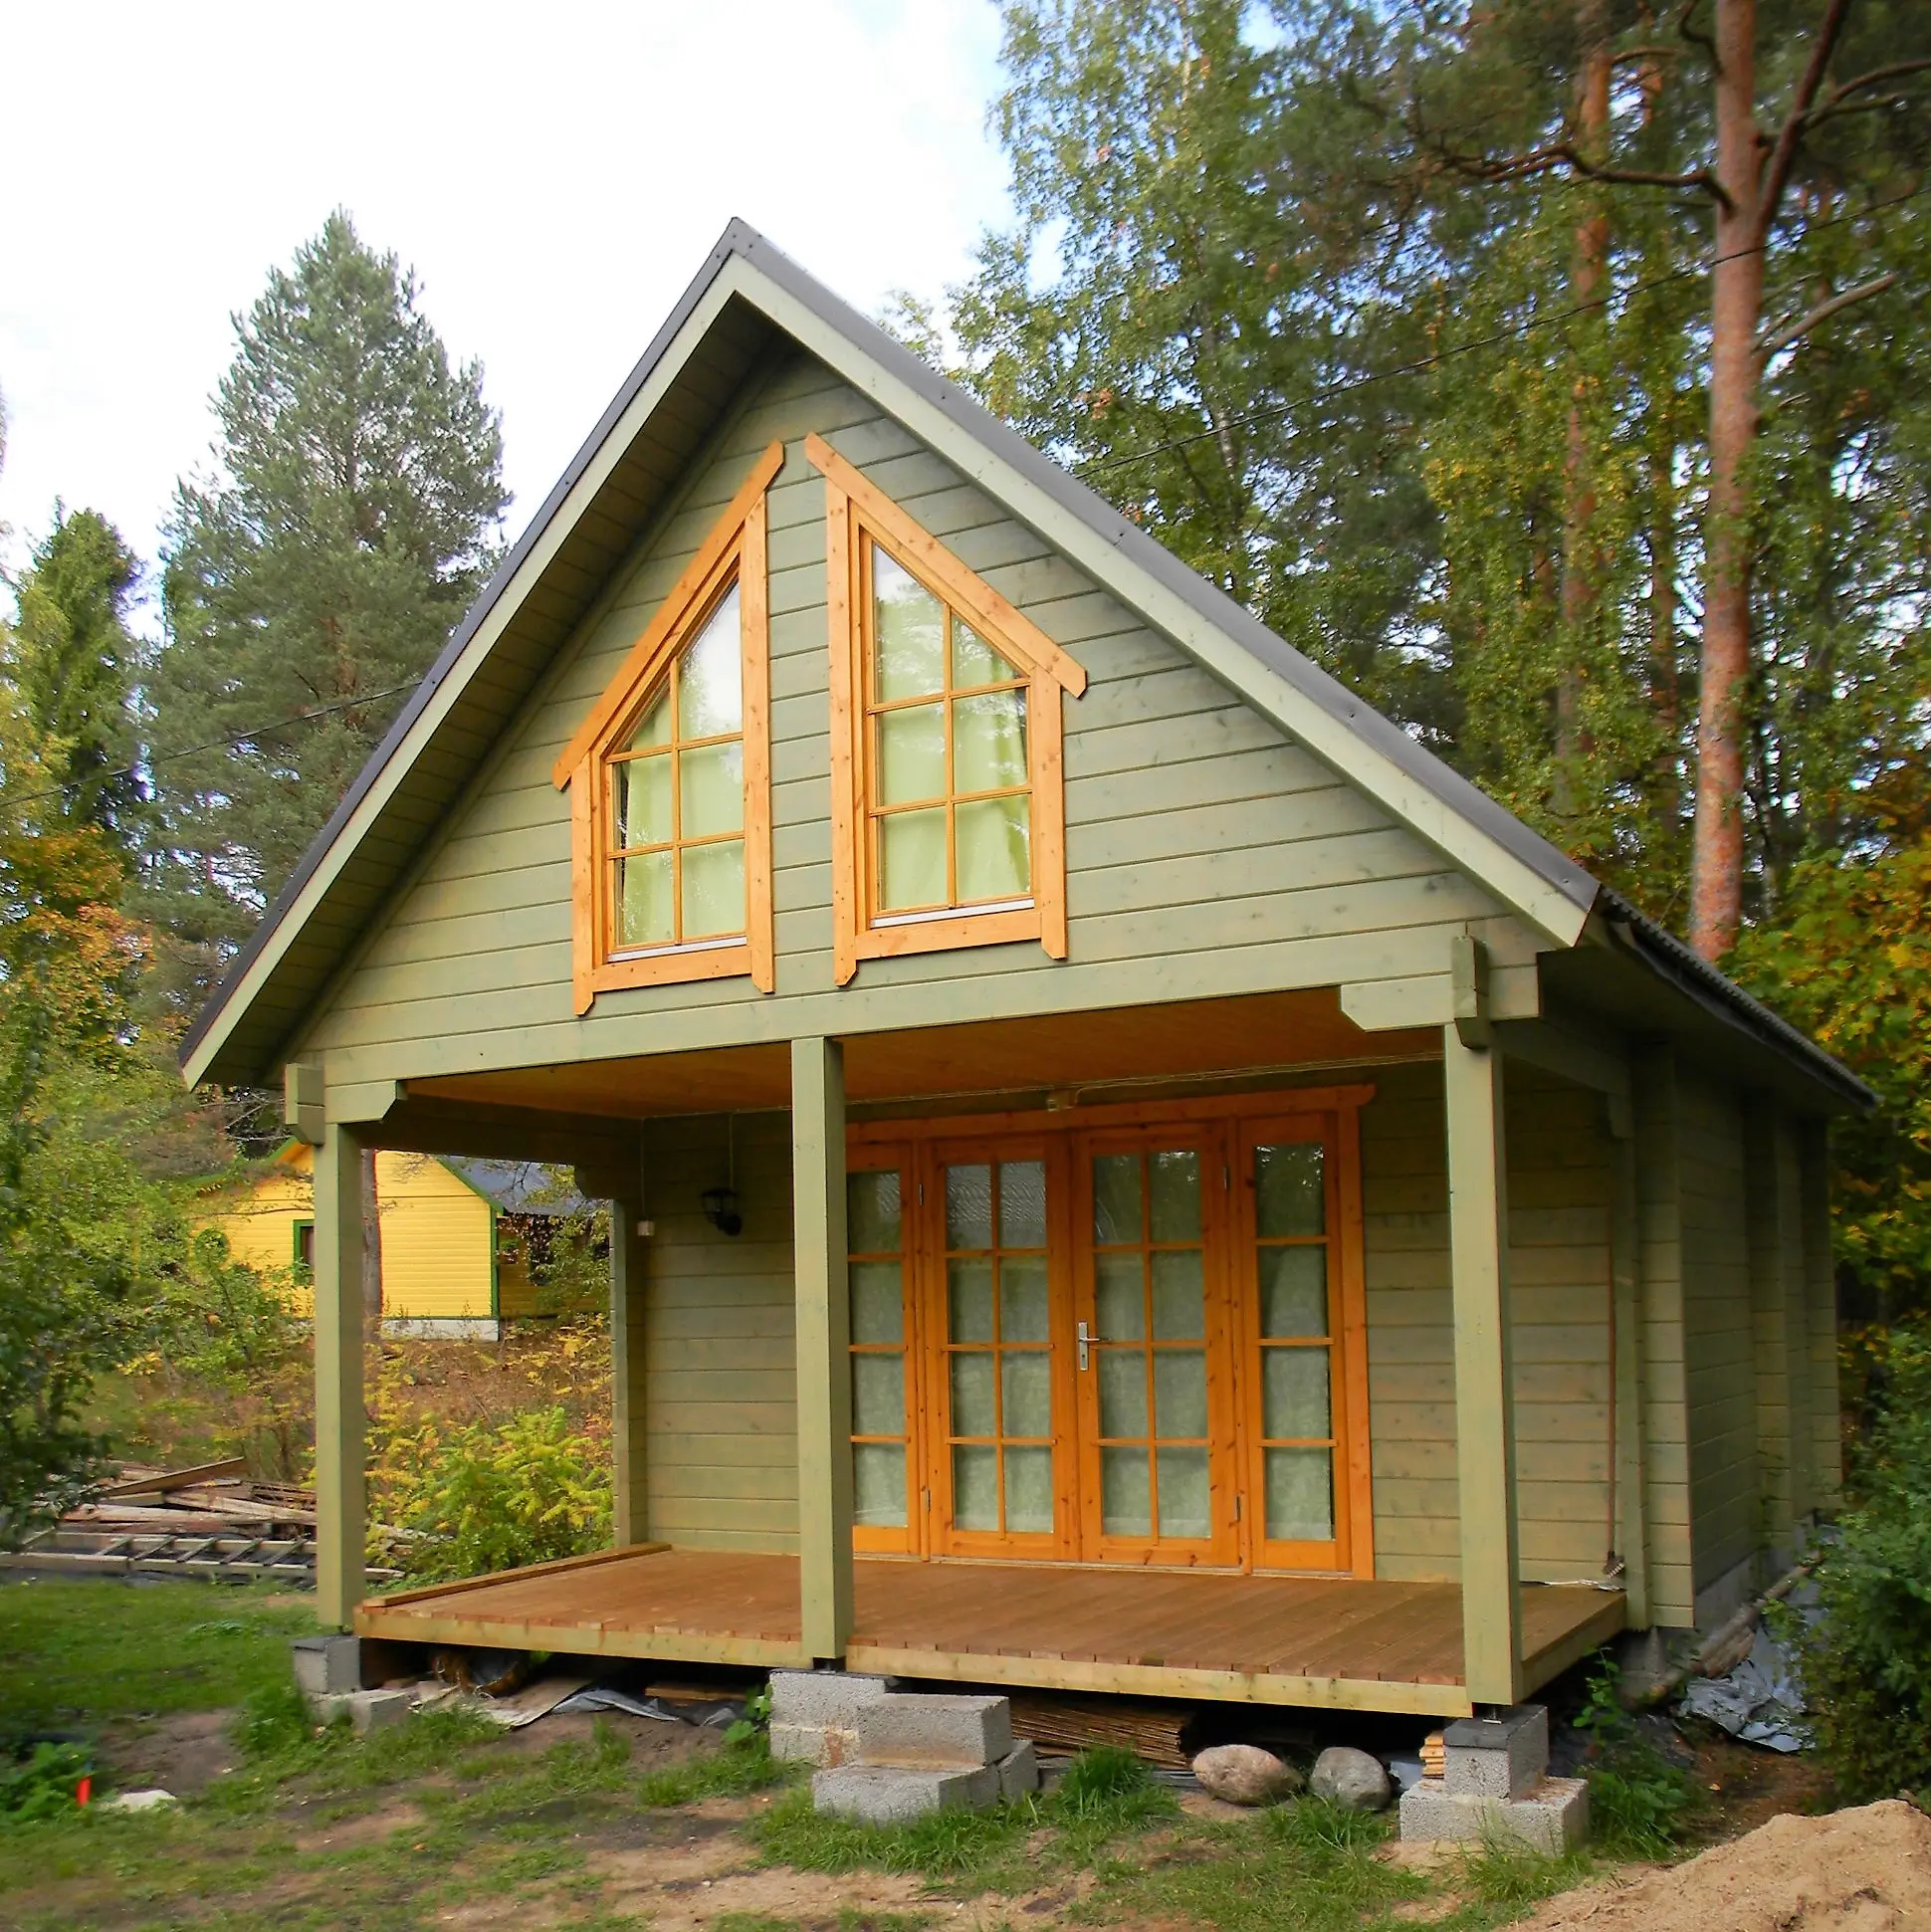 Kit de cabine residencial feita em madeira, casa de madeira, escandinavo, design de cabine, férias, anexo